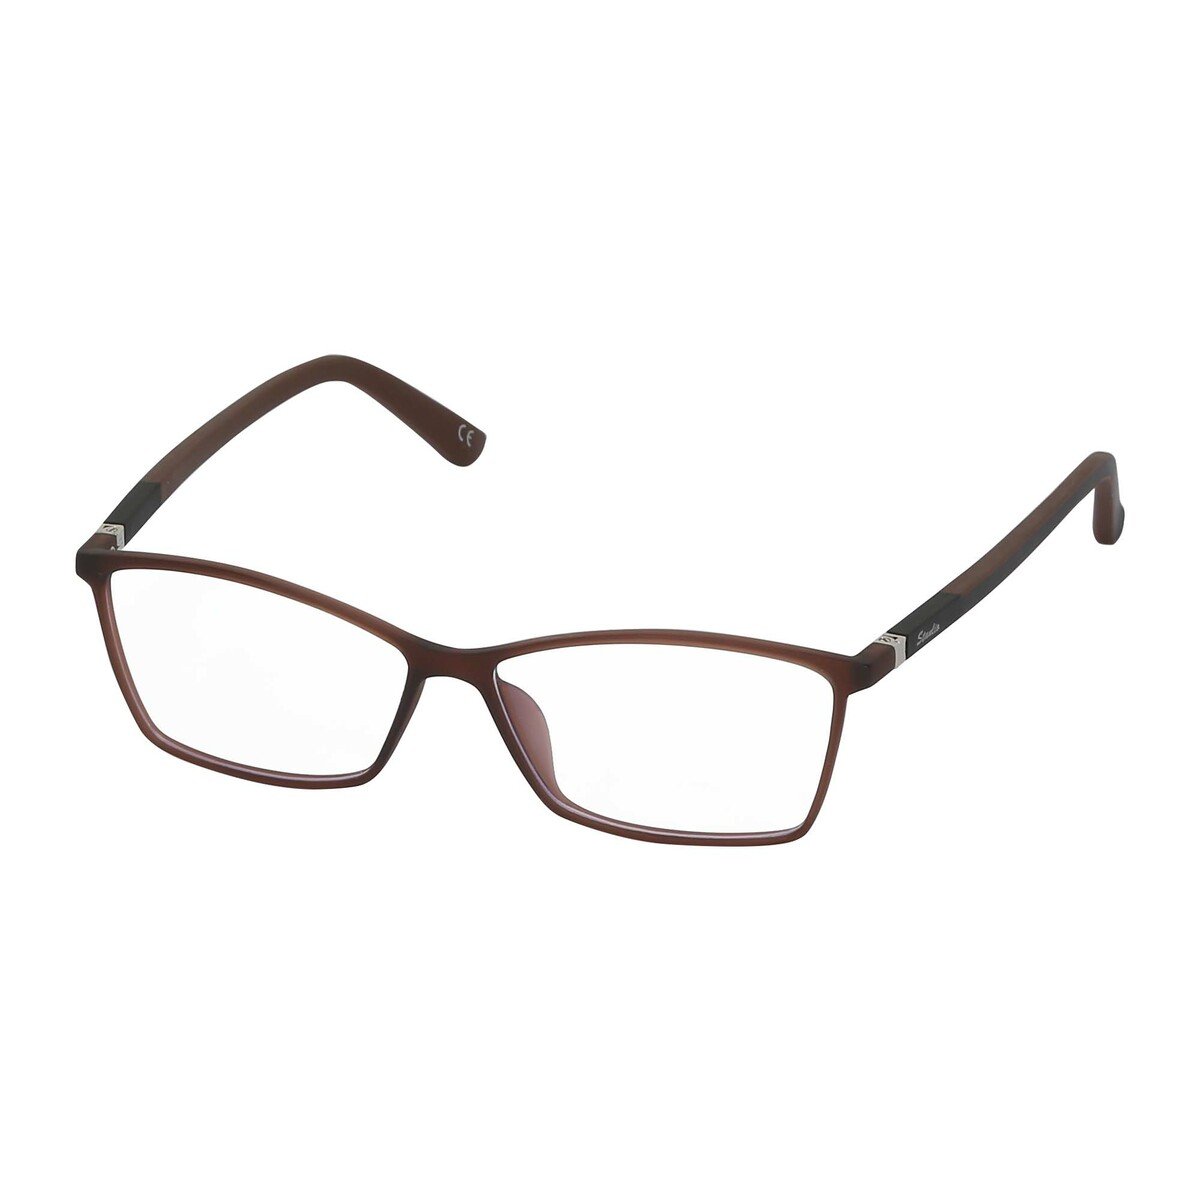 ستانليو نظارة للجنسين 5006 C5 بتصميم شبه مربع و لون بني